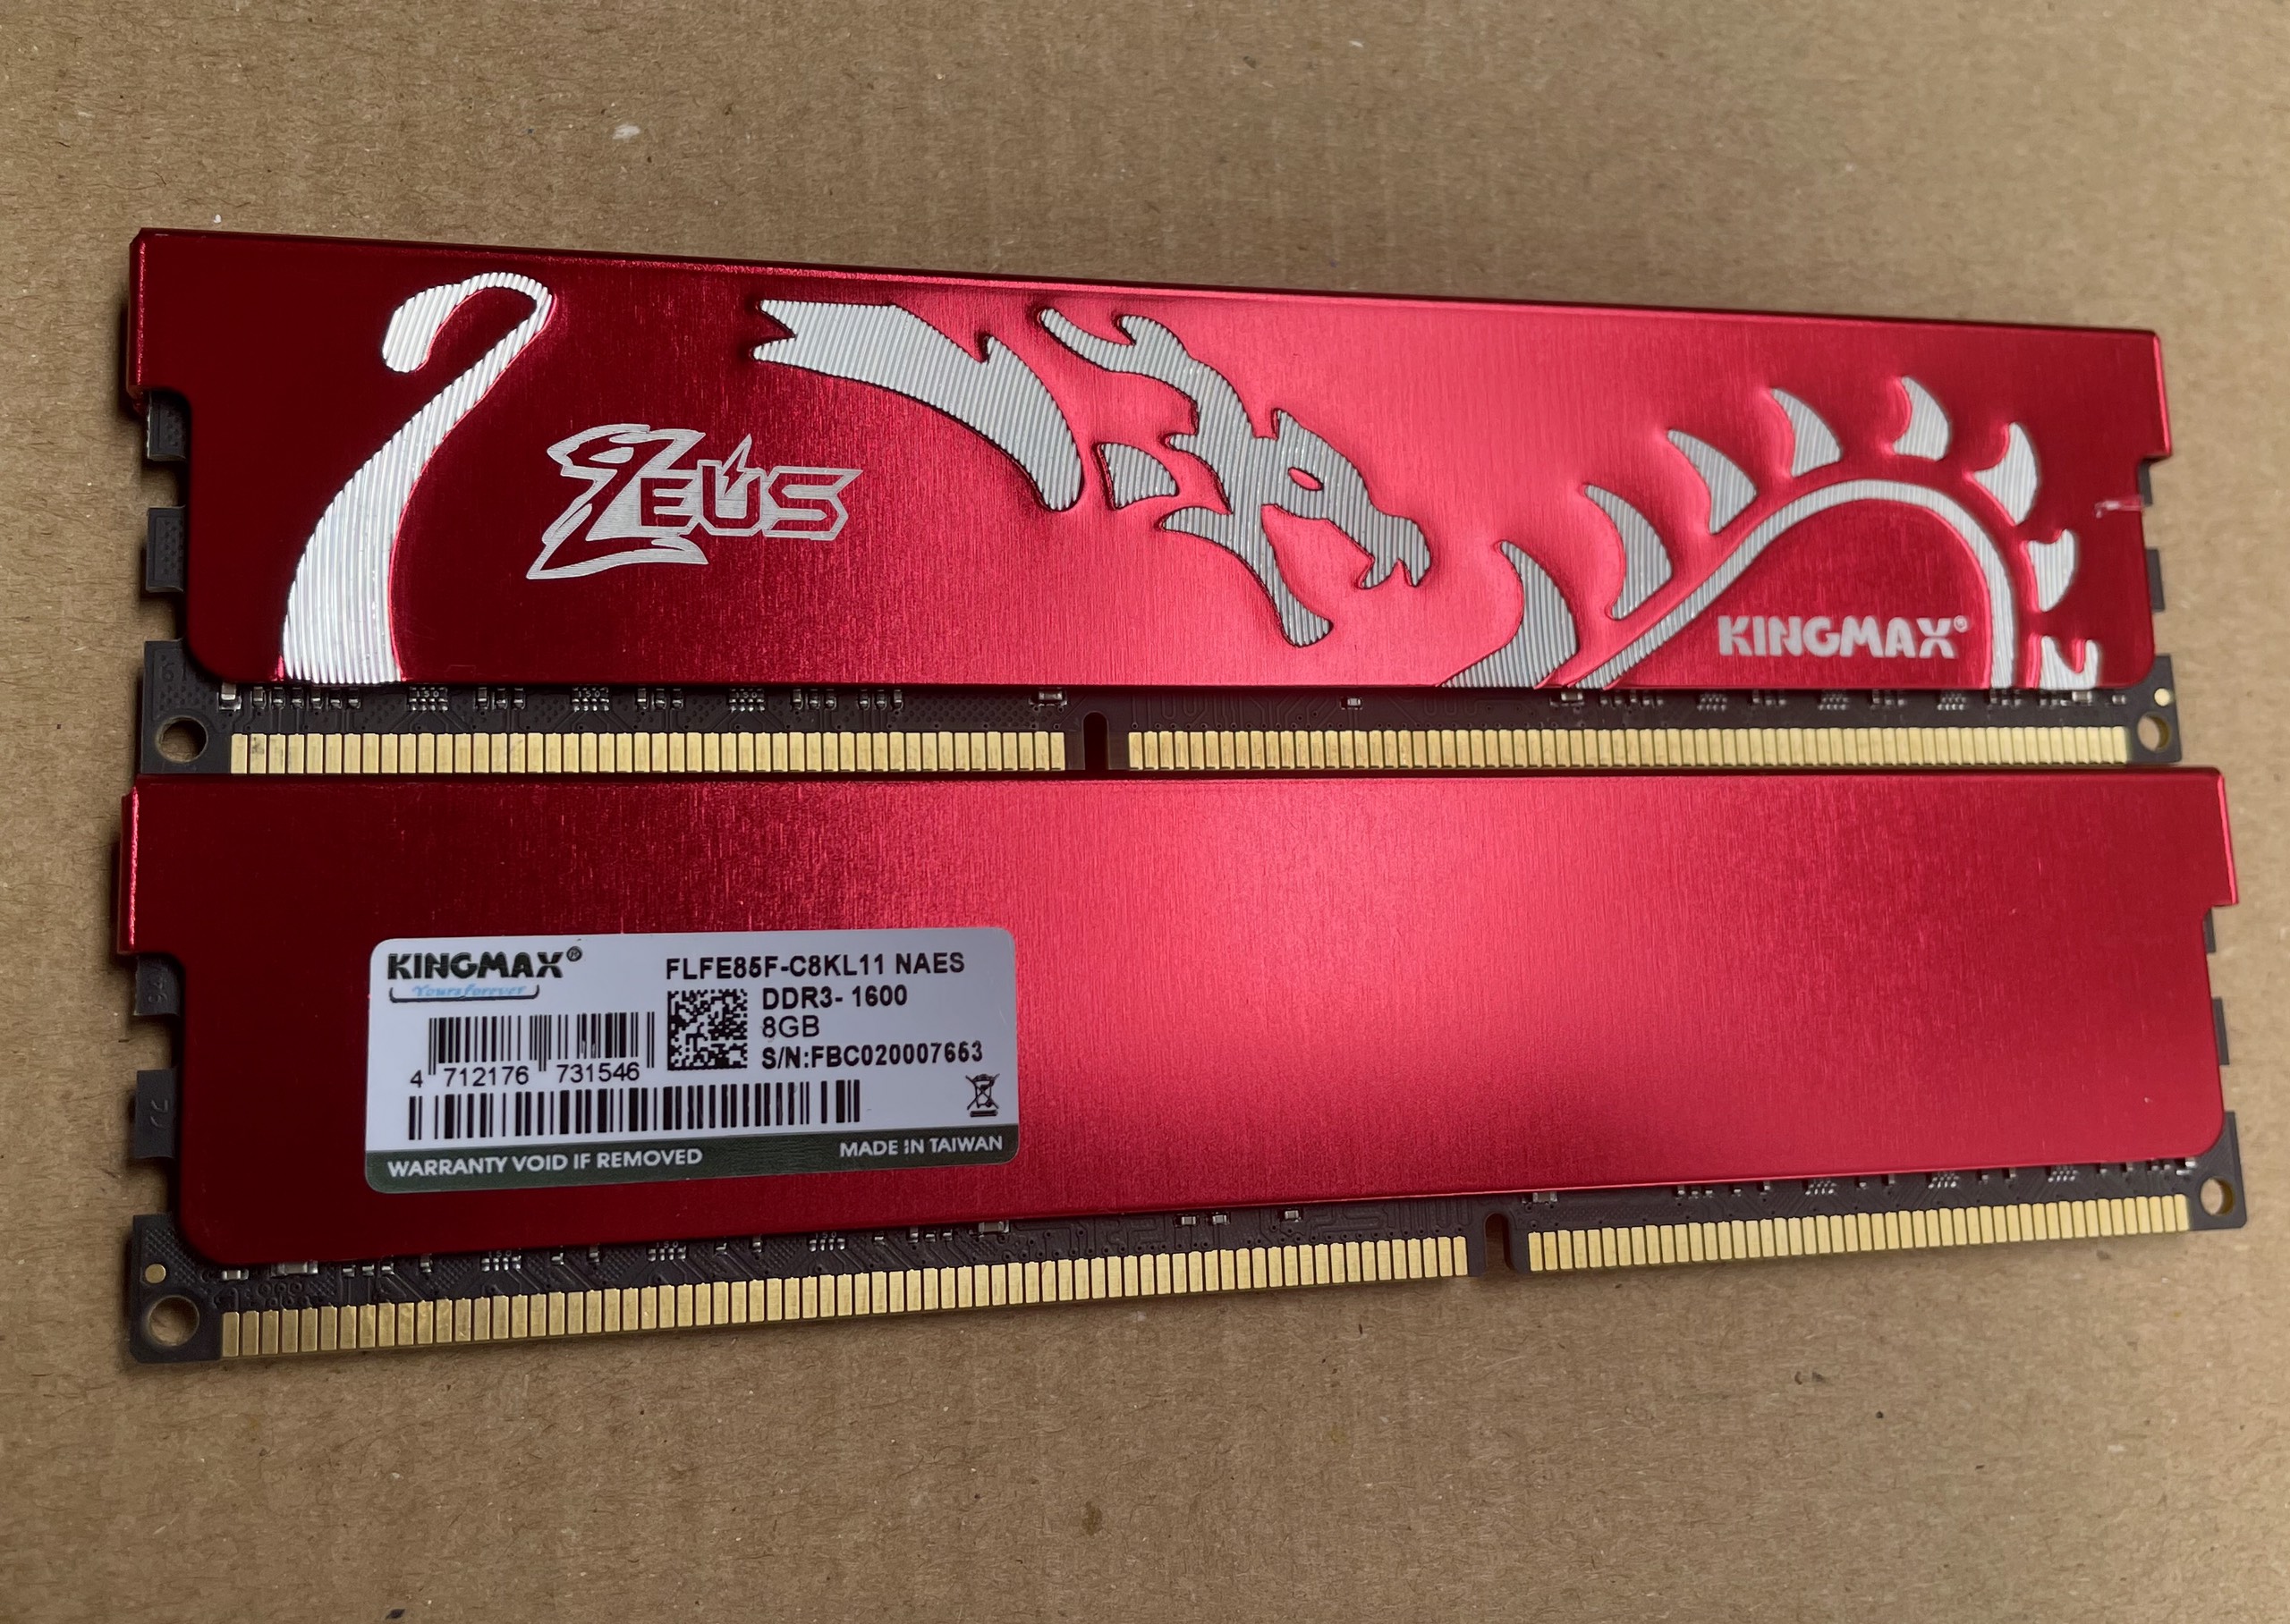 DDRAM III PC - Kingmax 8G/1600 Zeus Dragon Tản nhiệt thép